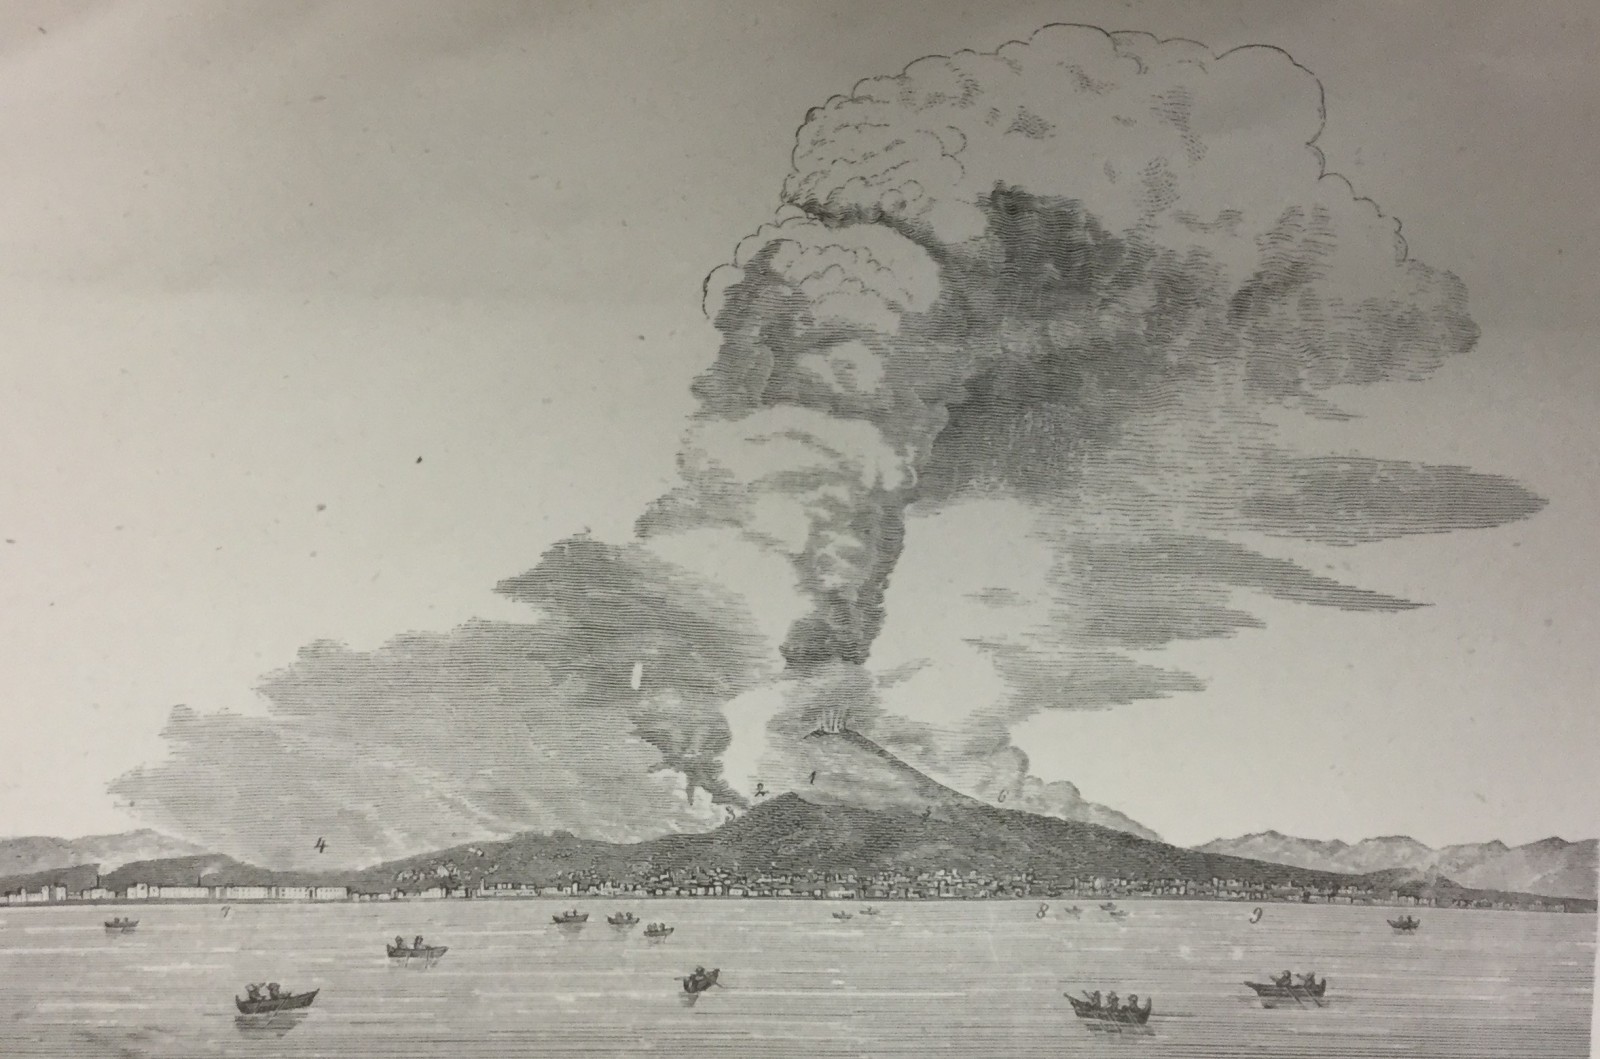 NOAA CSL: News Topics: Hunga Tonga-Hunga Ha'apai Volcano Eruption Research